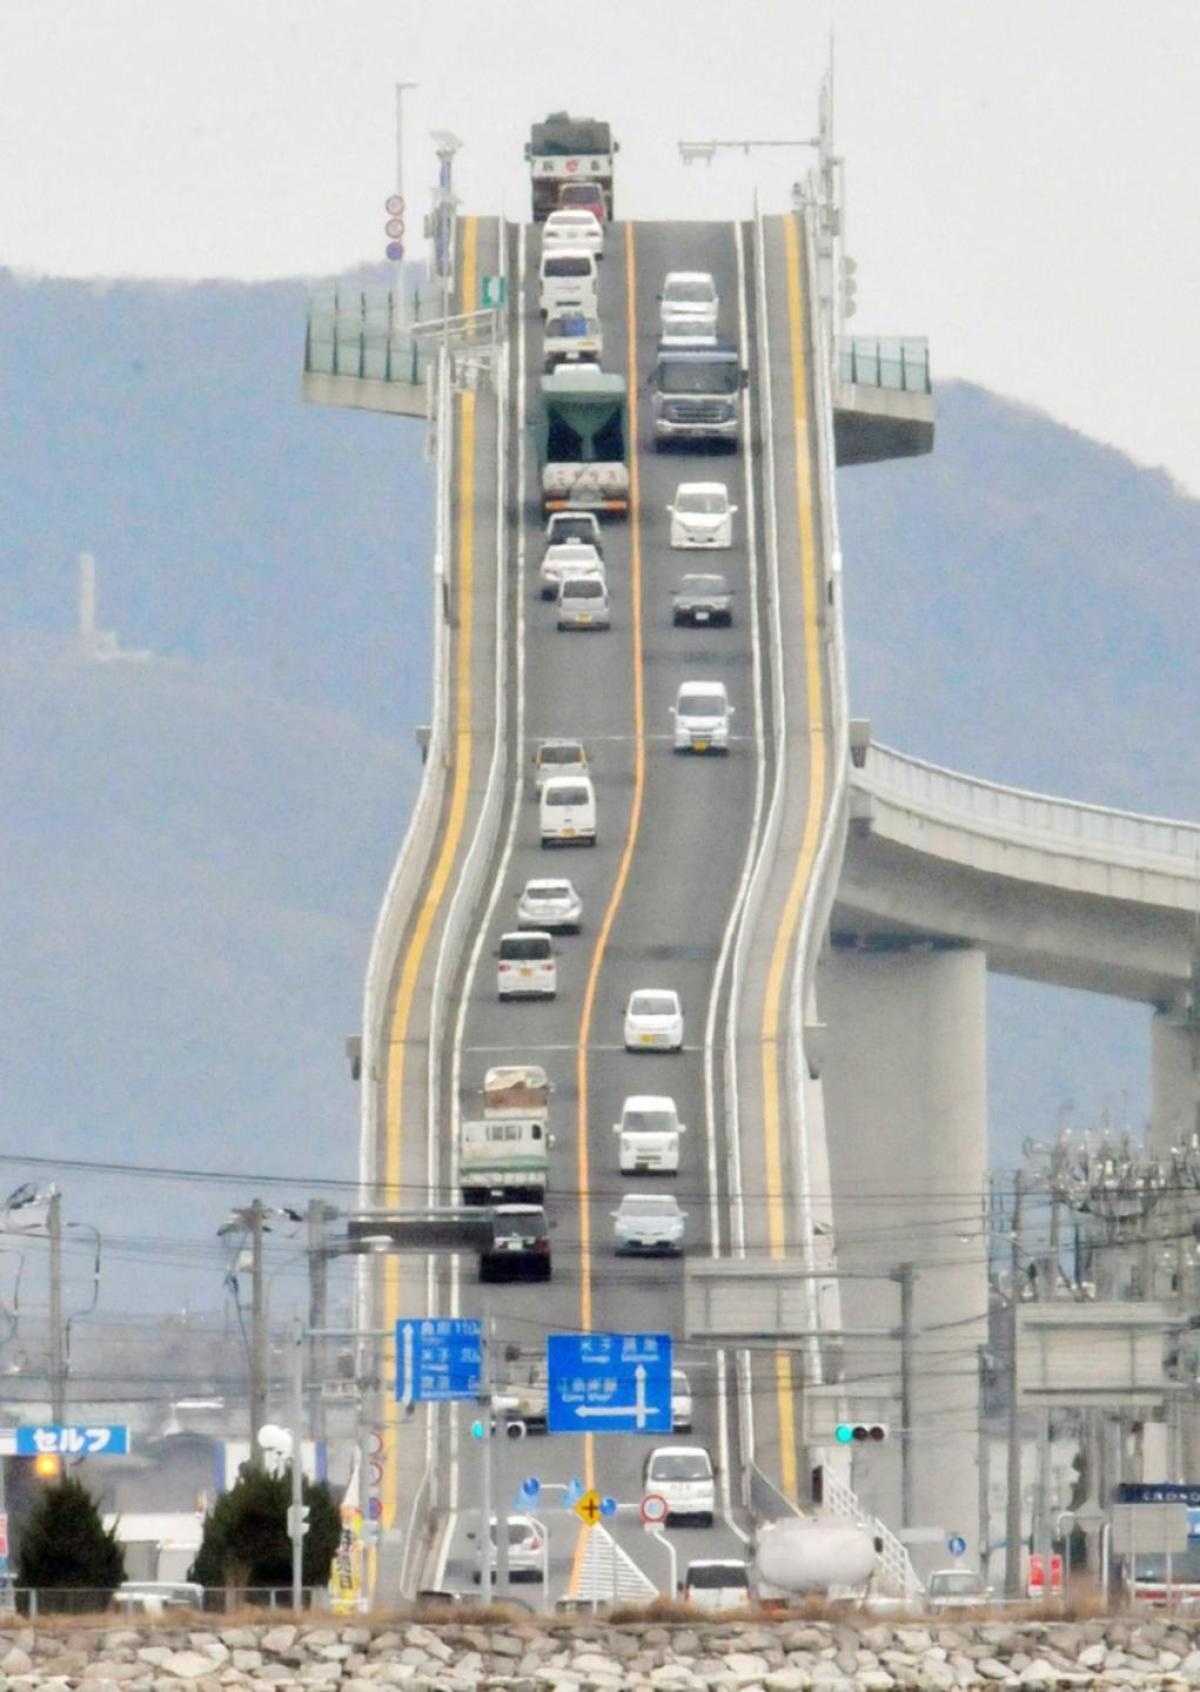 мост ишима охаси в японии